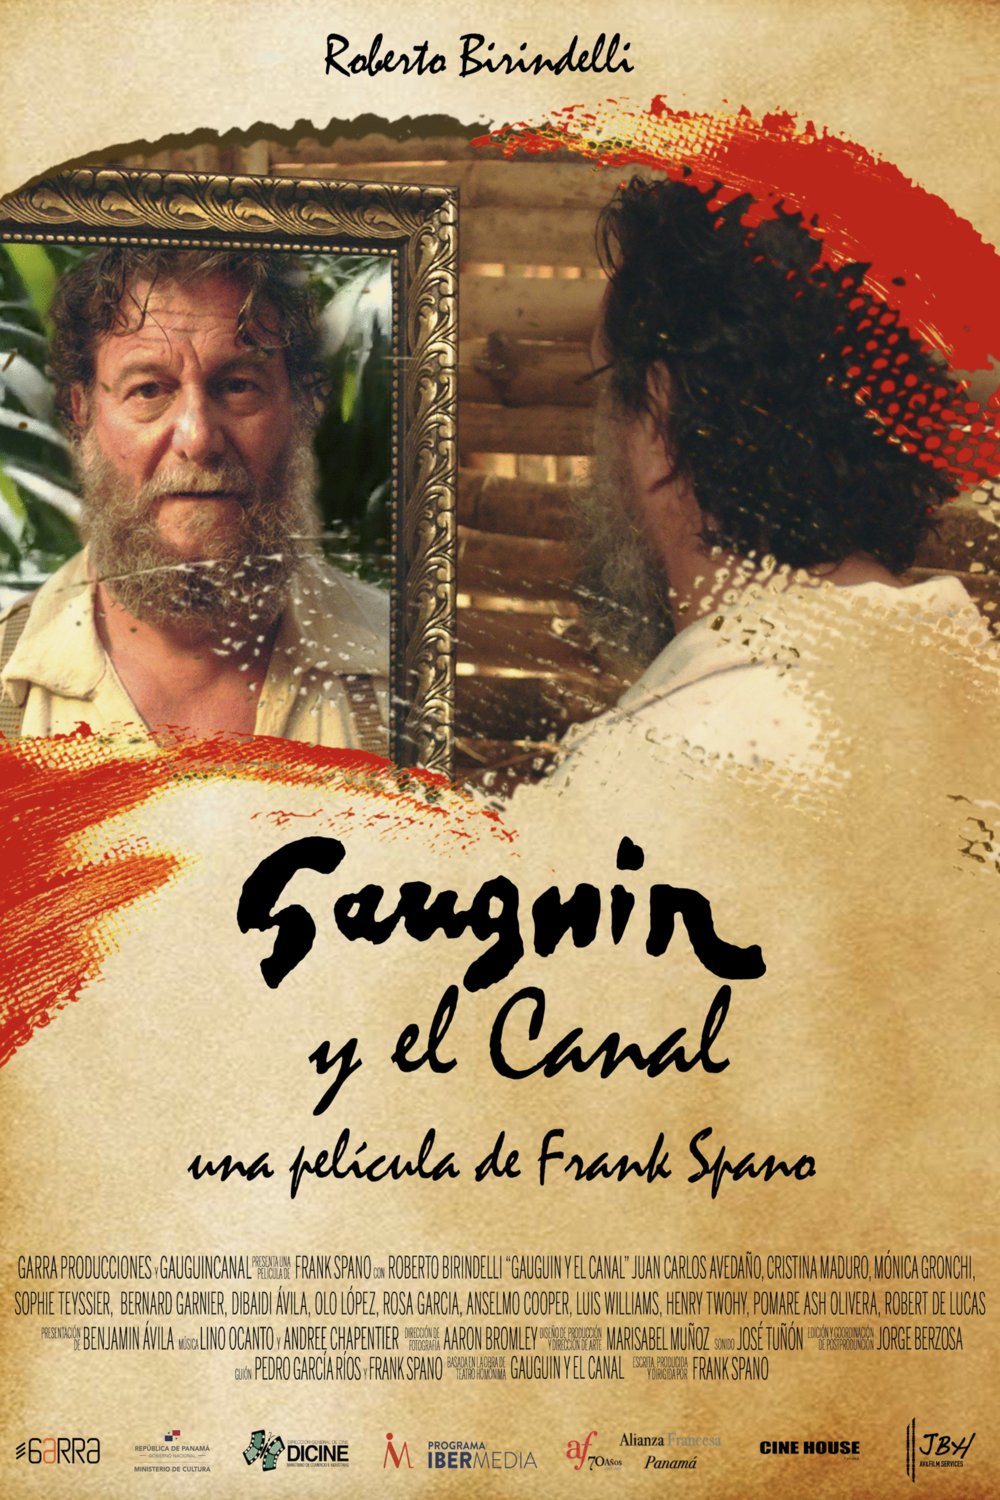 L'affiche du film Gauguin y el Canal